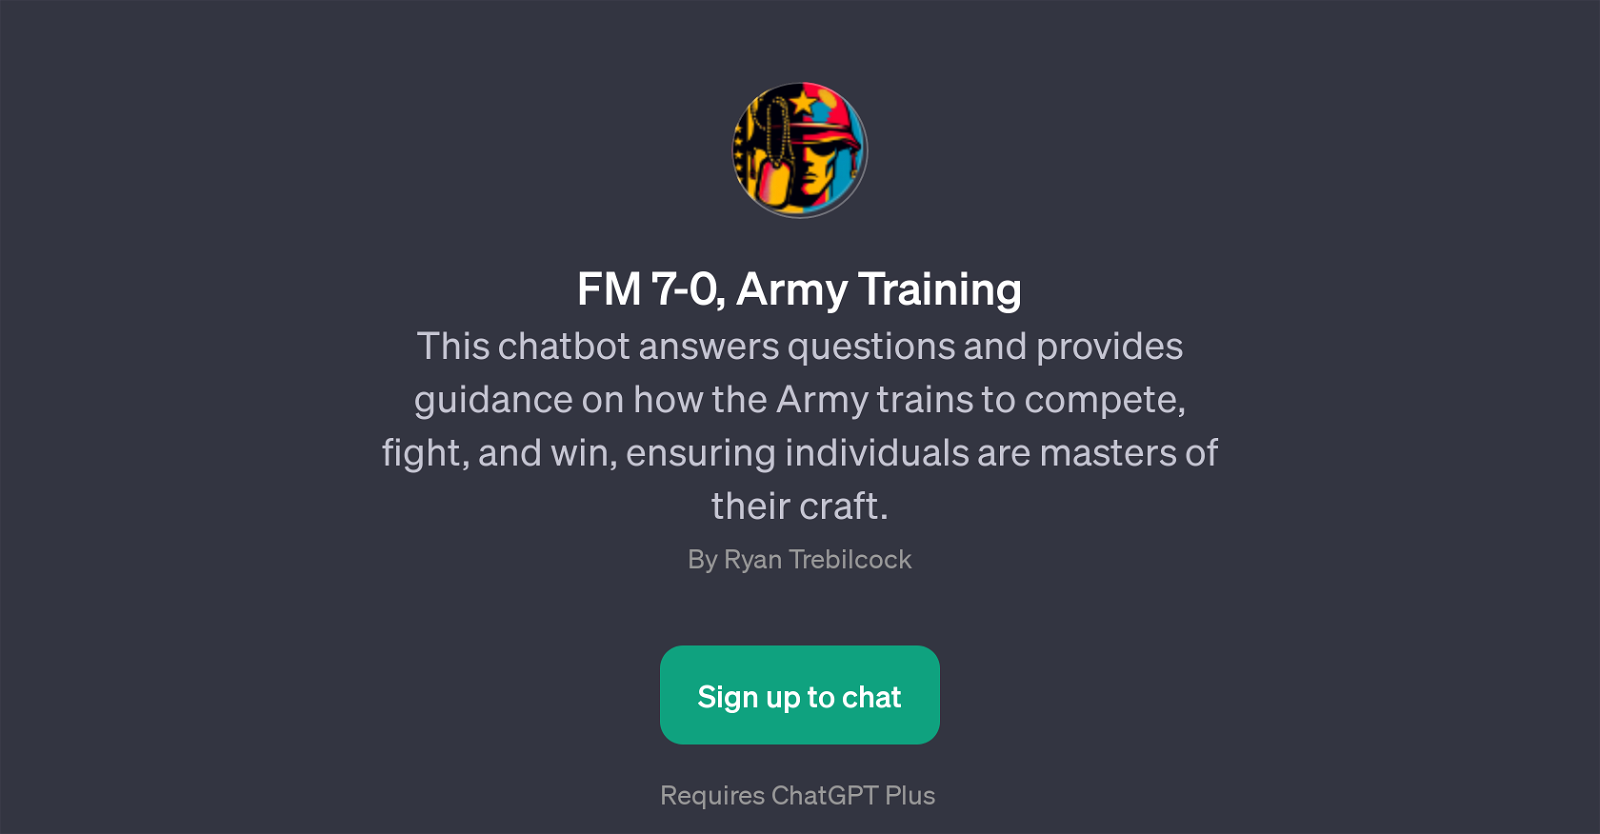 FM 7-0, Army Training website